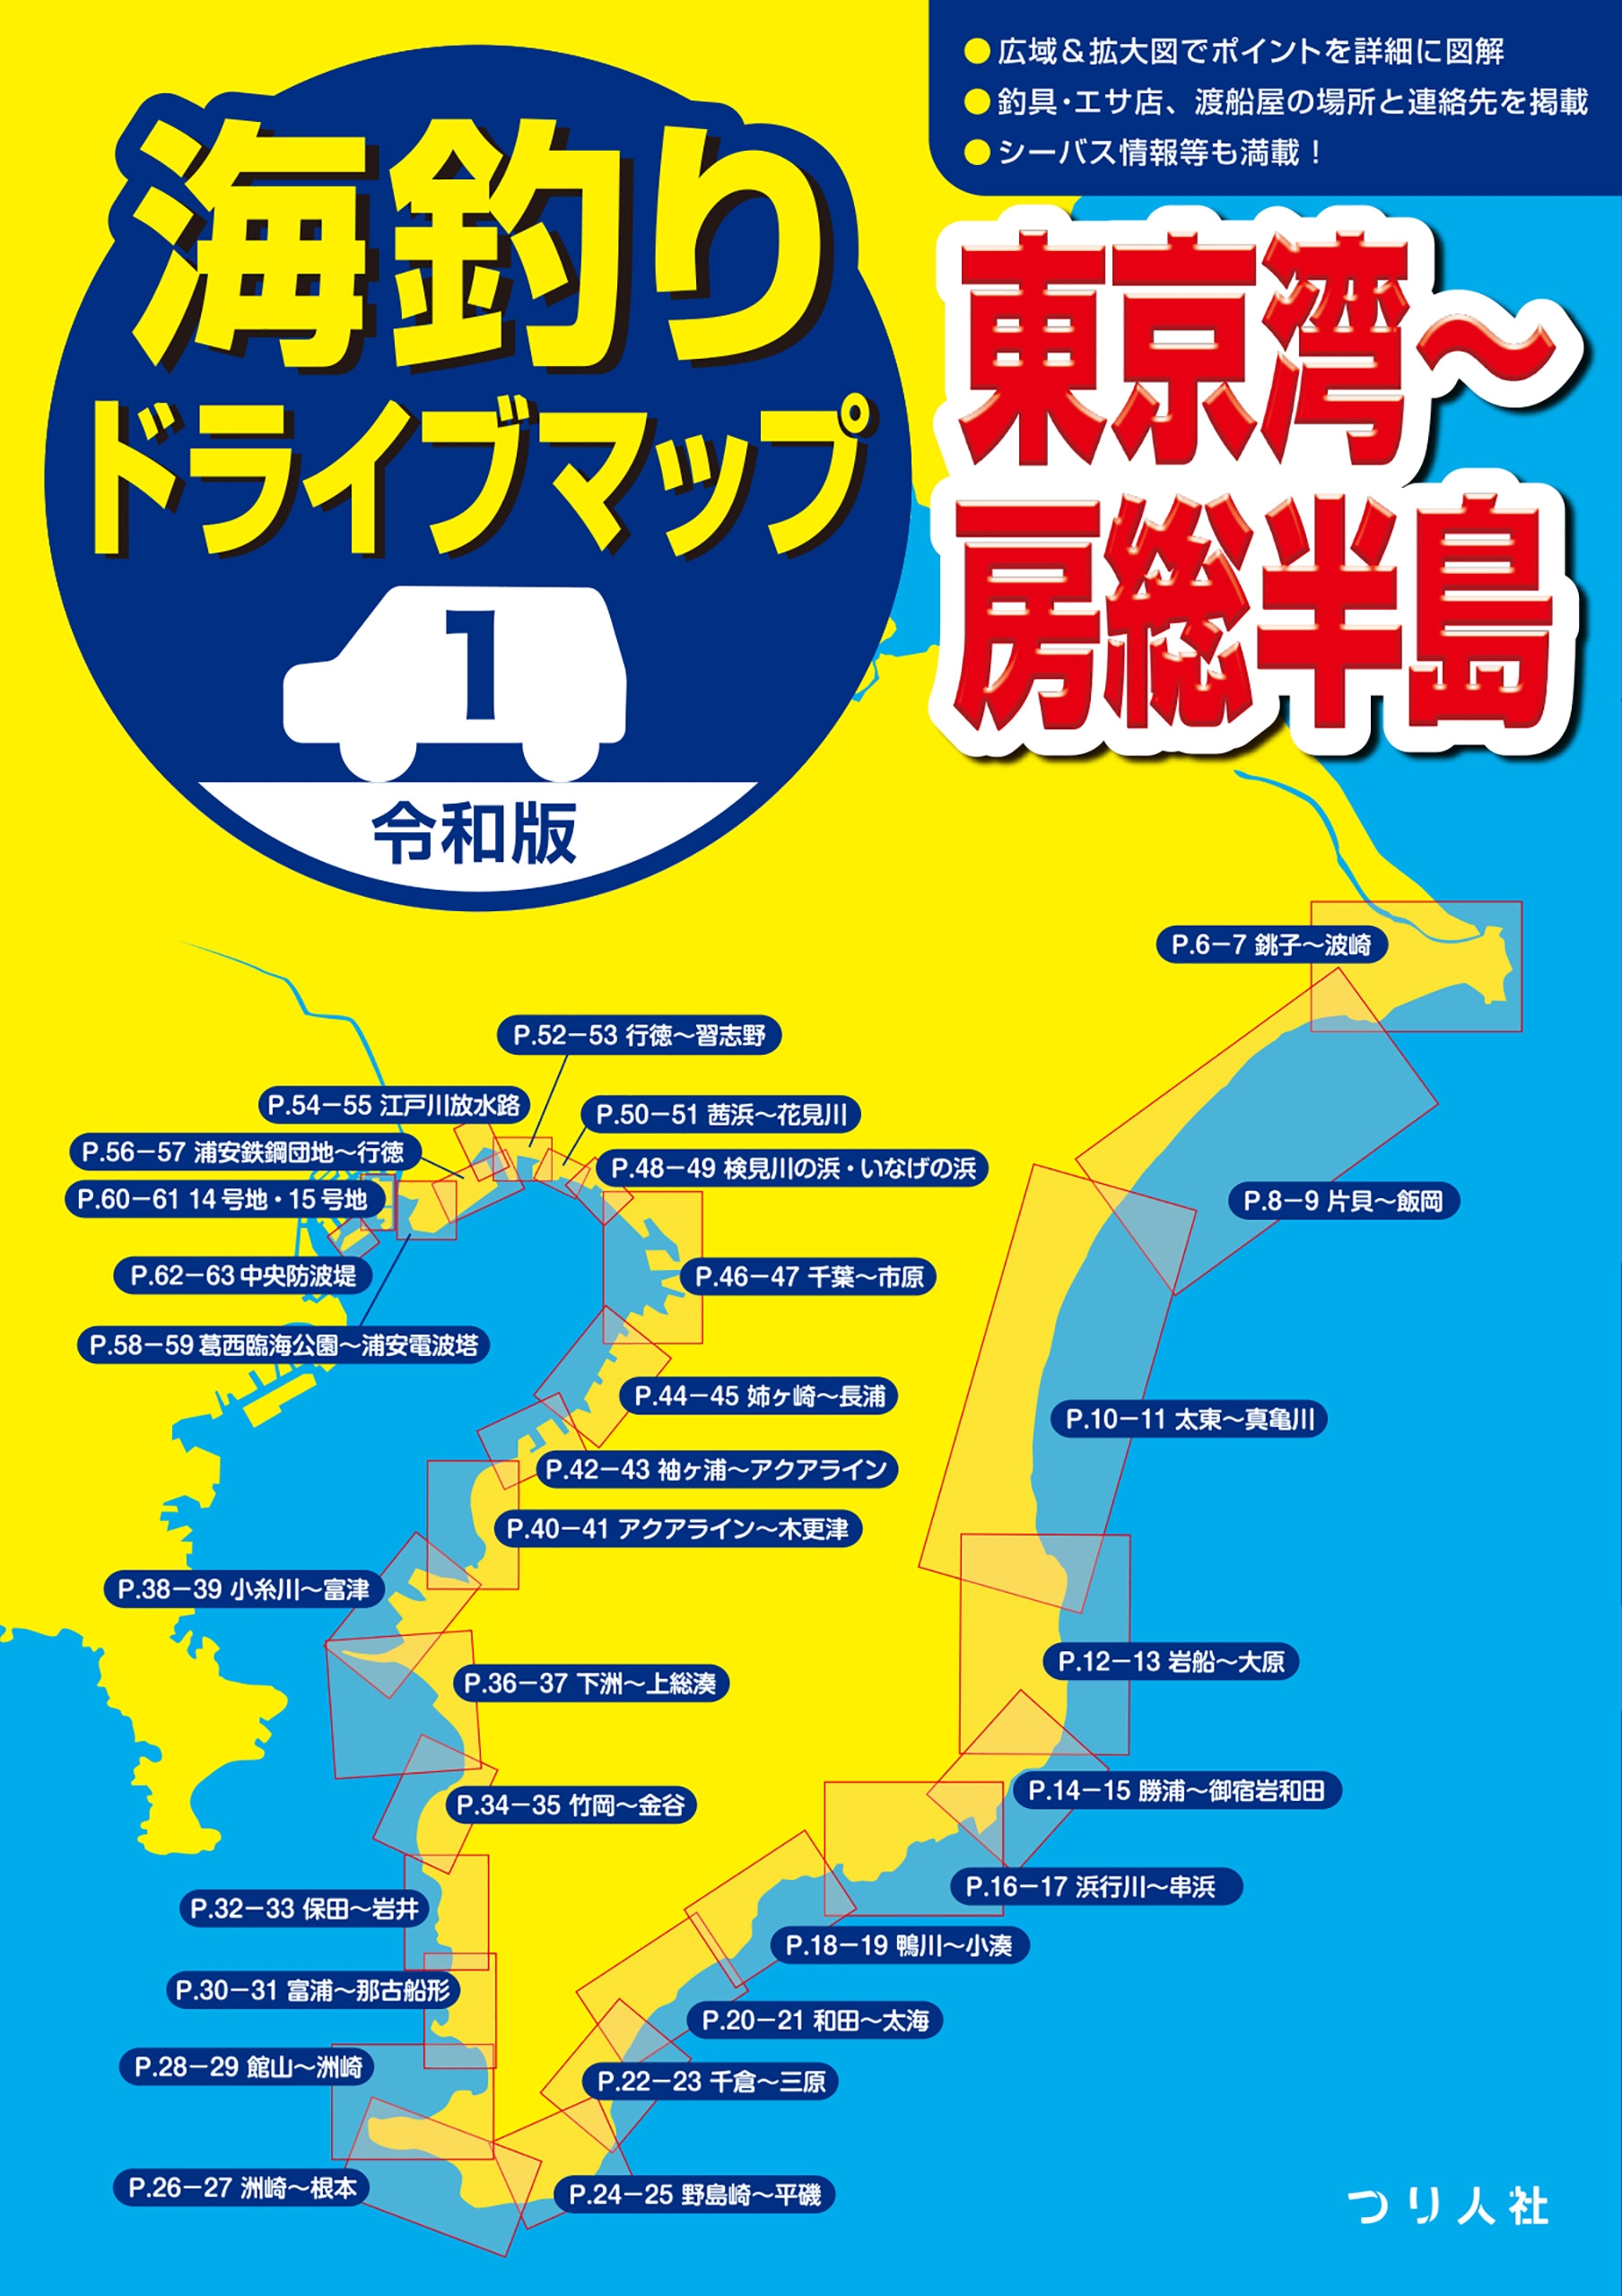 海釣りドライブマップ 東京湾房総半島 東京湾三浦半島 - 通販